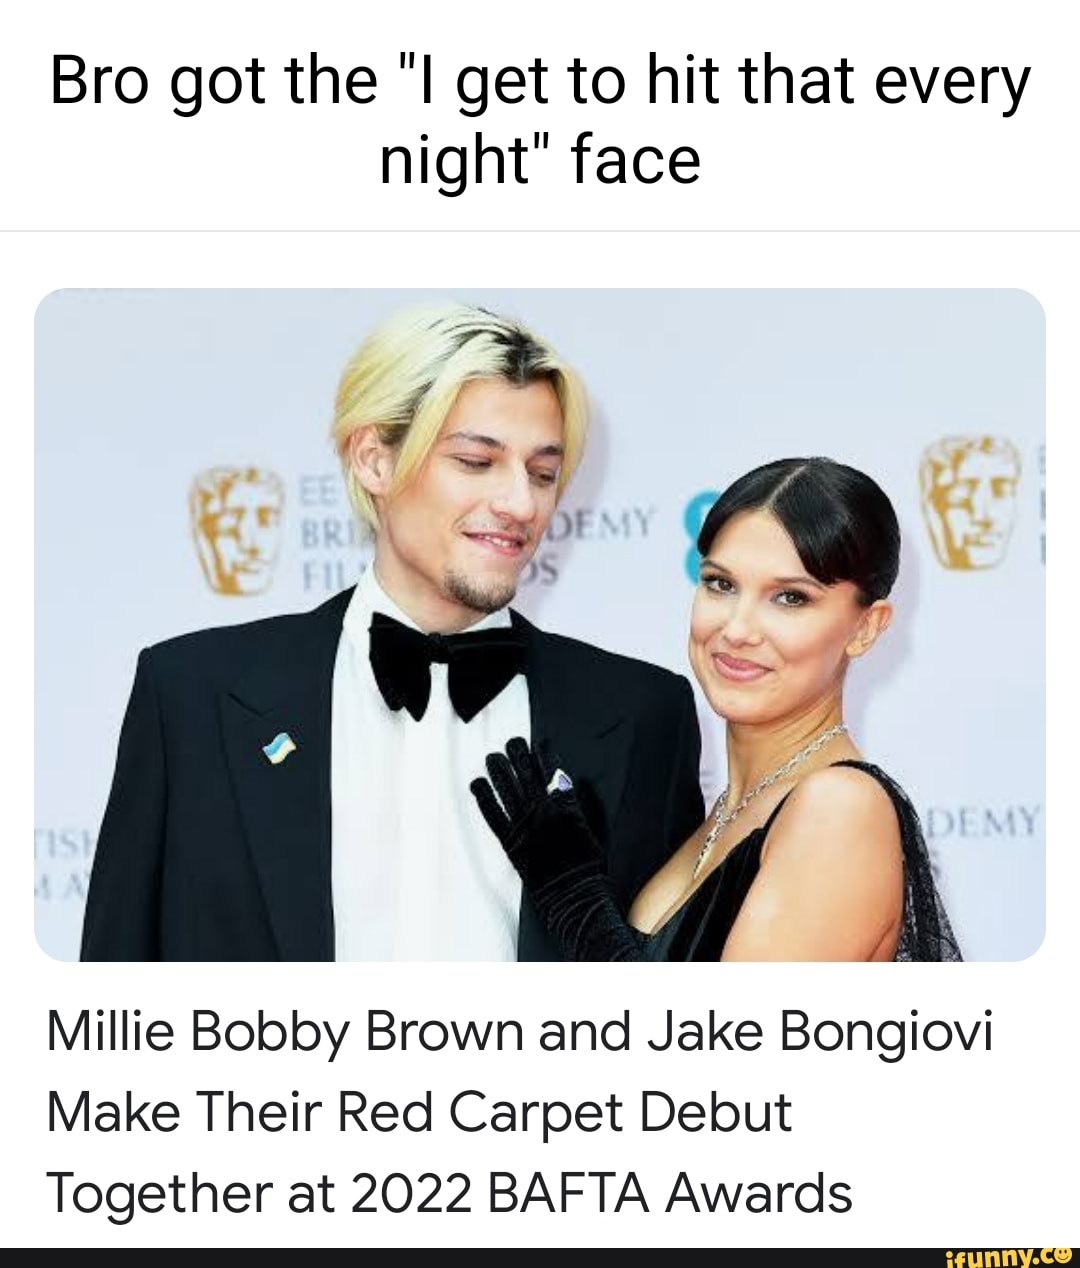 Bafta 2022: Millie Bobby Brown and Jake Bongiovi make red carpet